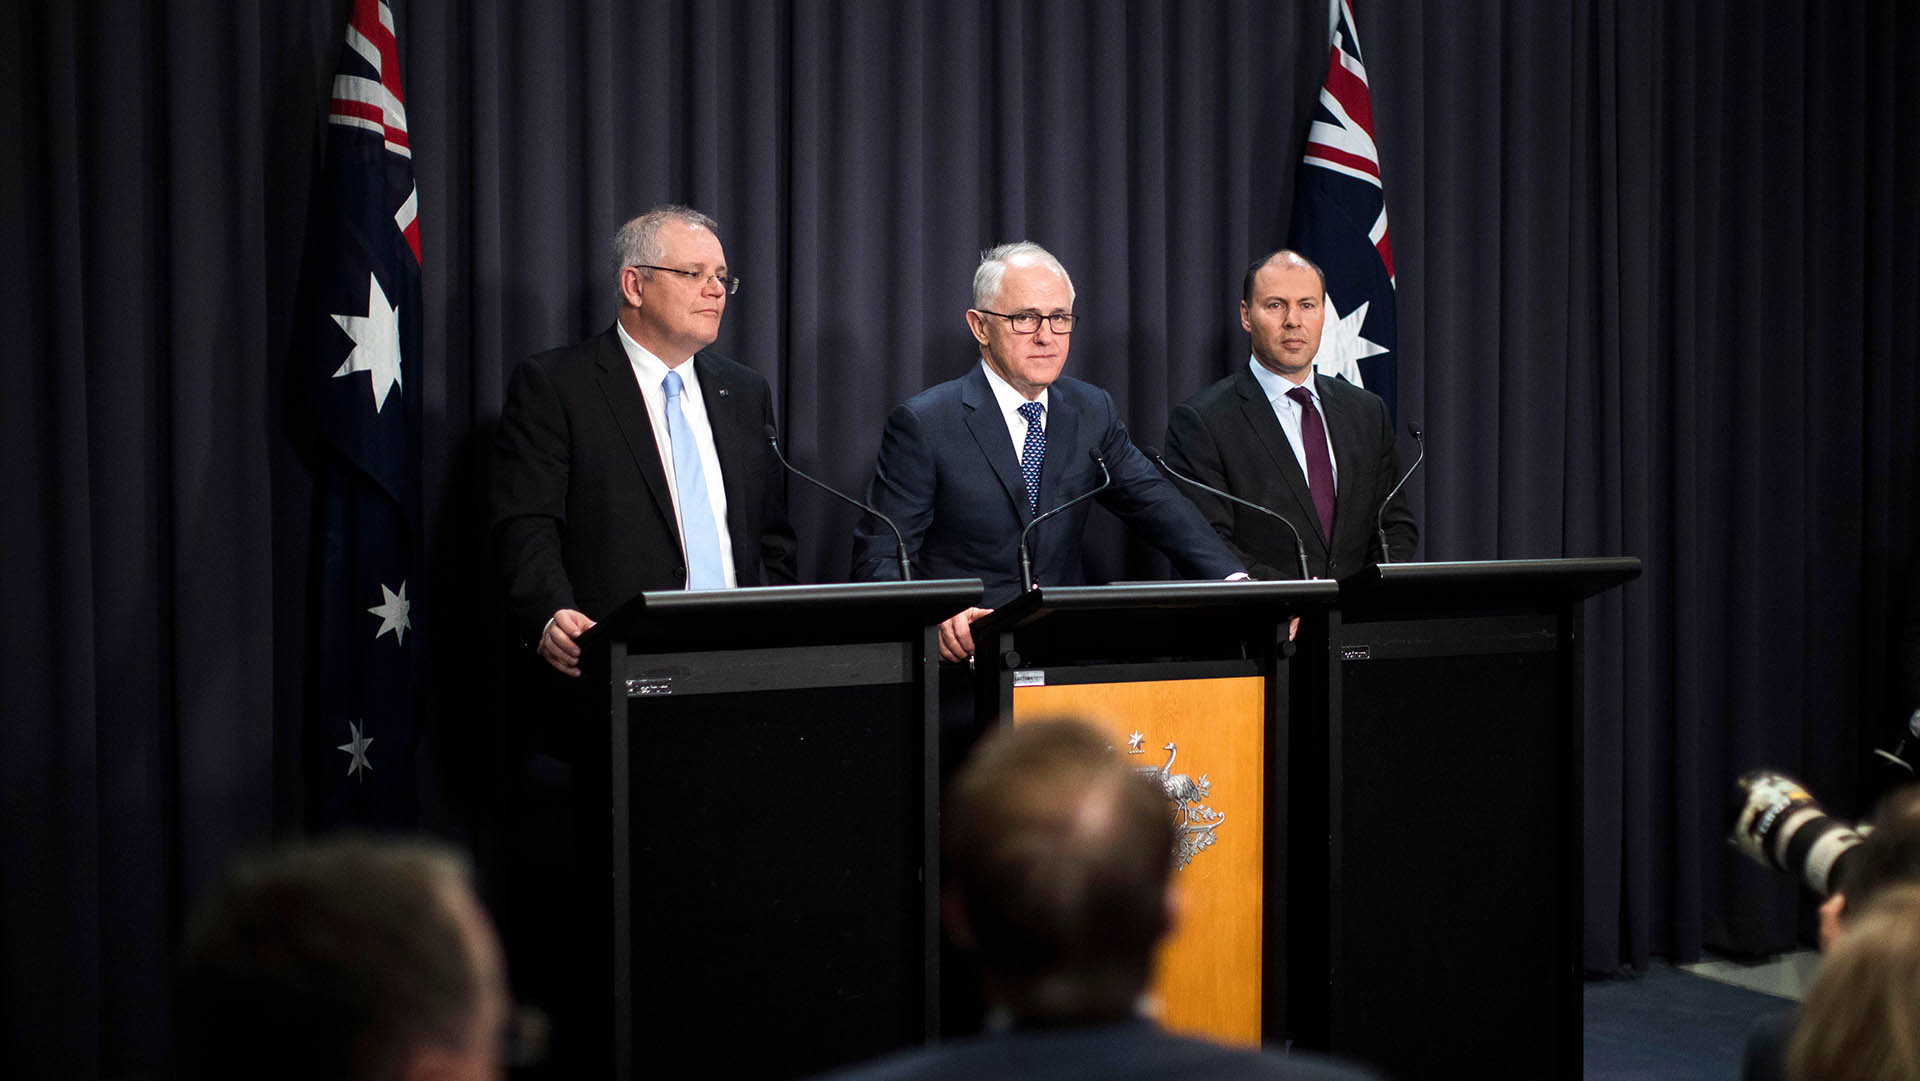 Morrison, Turnbull and Frydenberg press conference